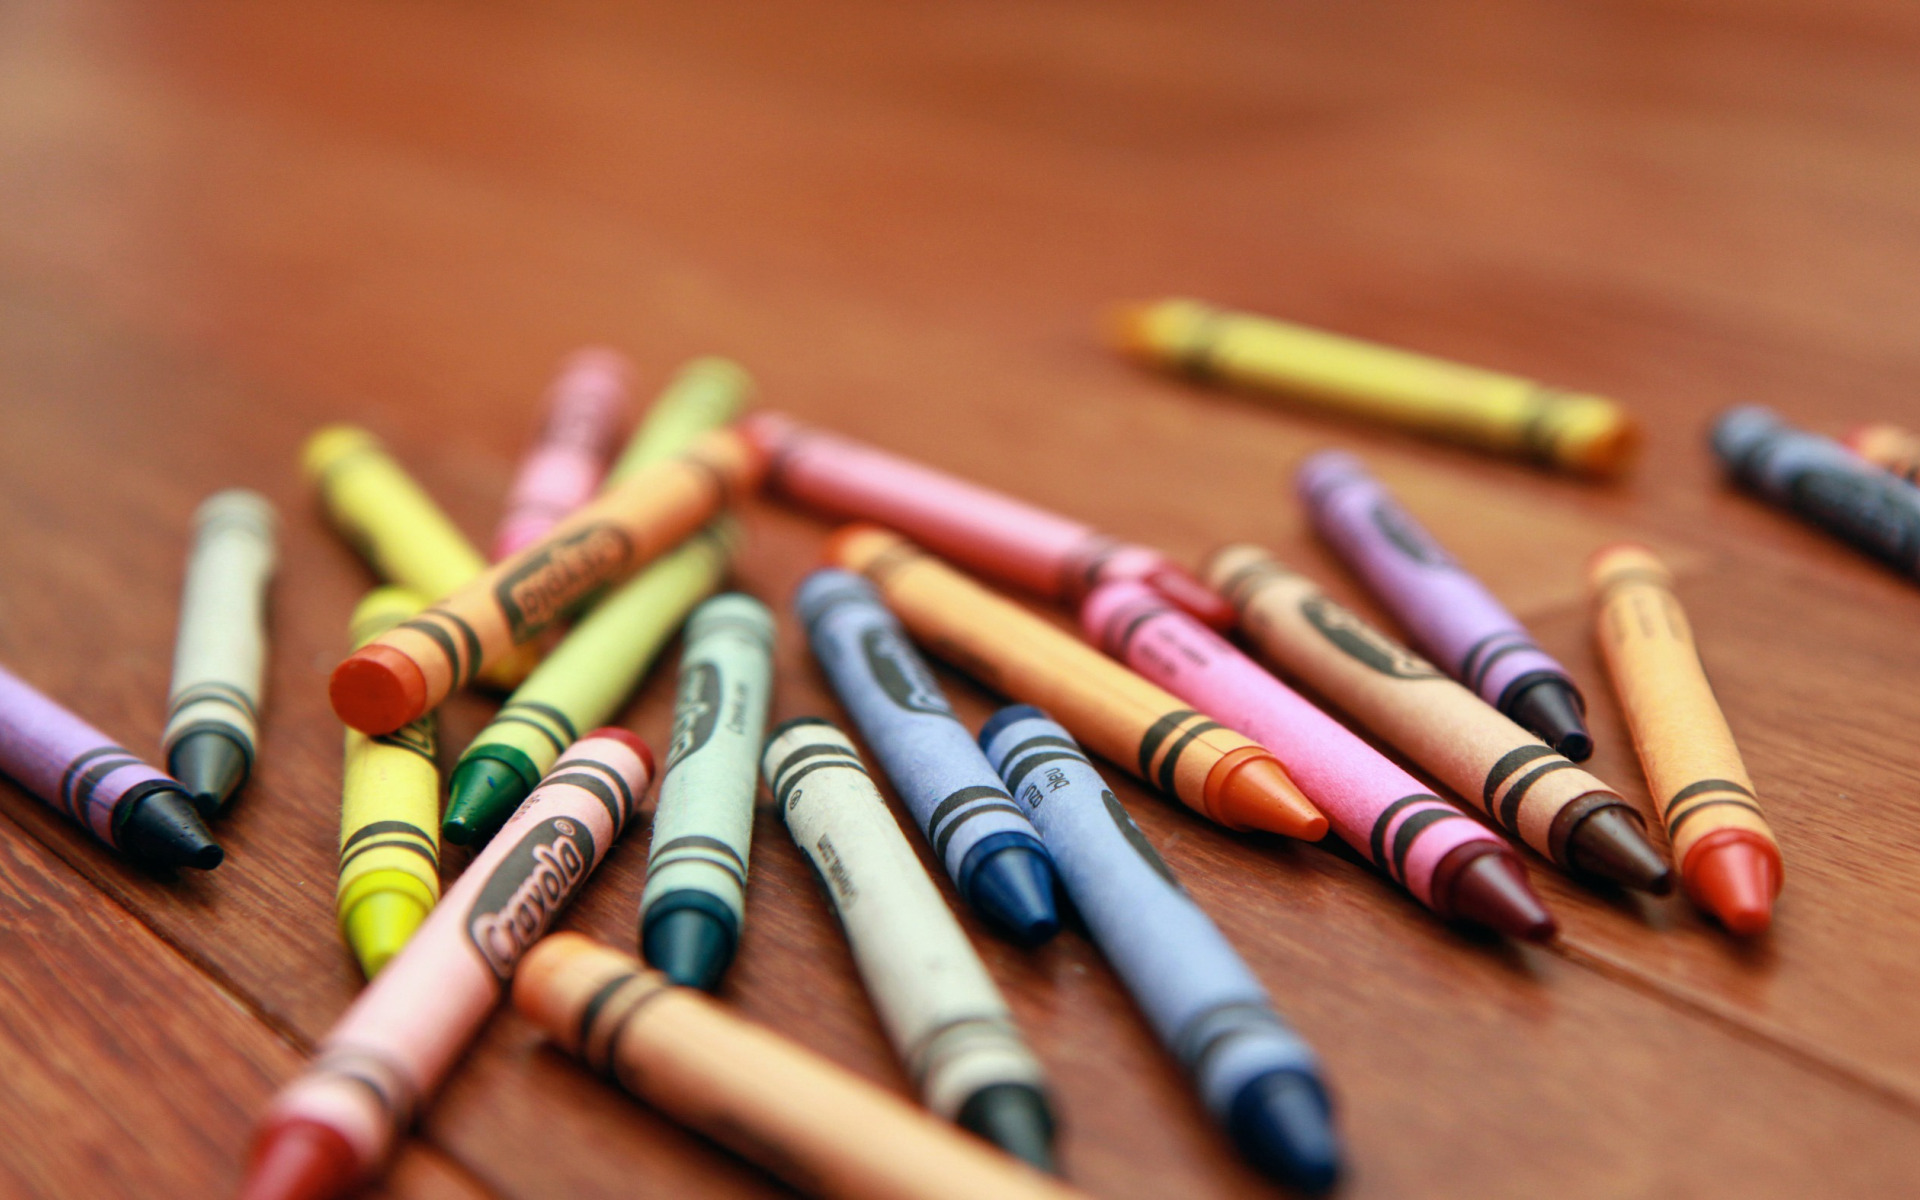 Цветной предмет. Разбросанные карандаши. Красивые предметы. Карандаши на столе. Разбросанные карандаши на столе.